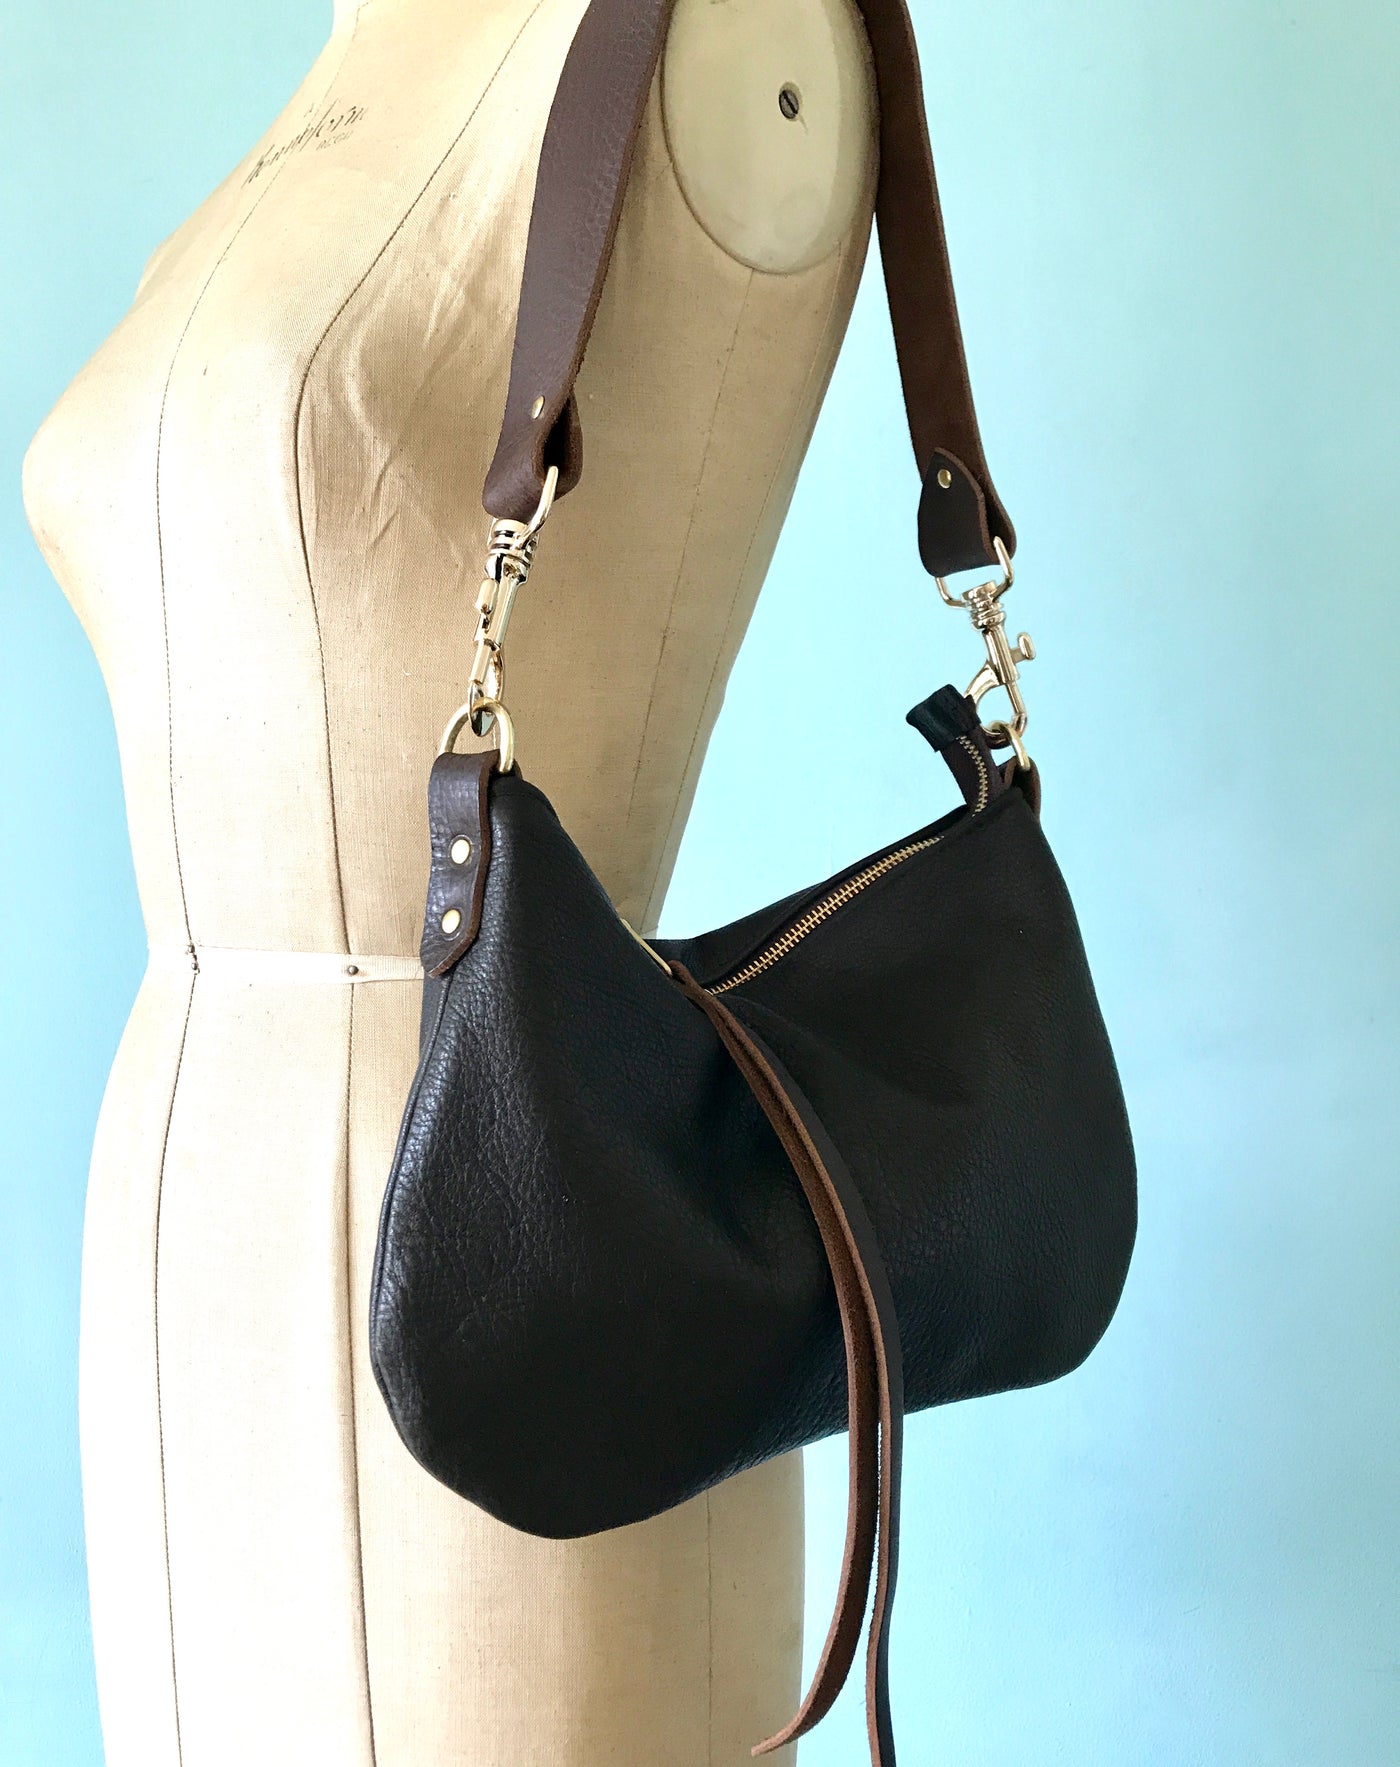 LIZ CLAIBORNE - Small BLACK Leather - Crossbody Shoulder Bag Purse / Clutch  | eBay